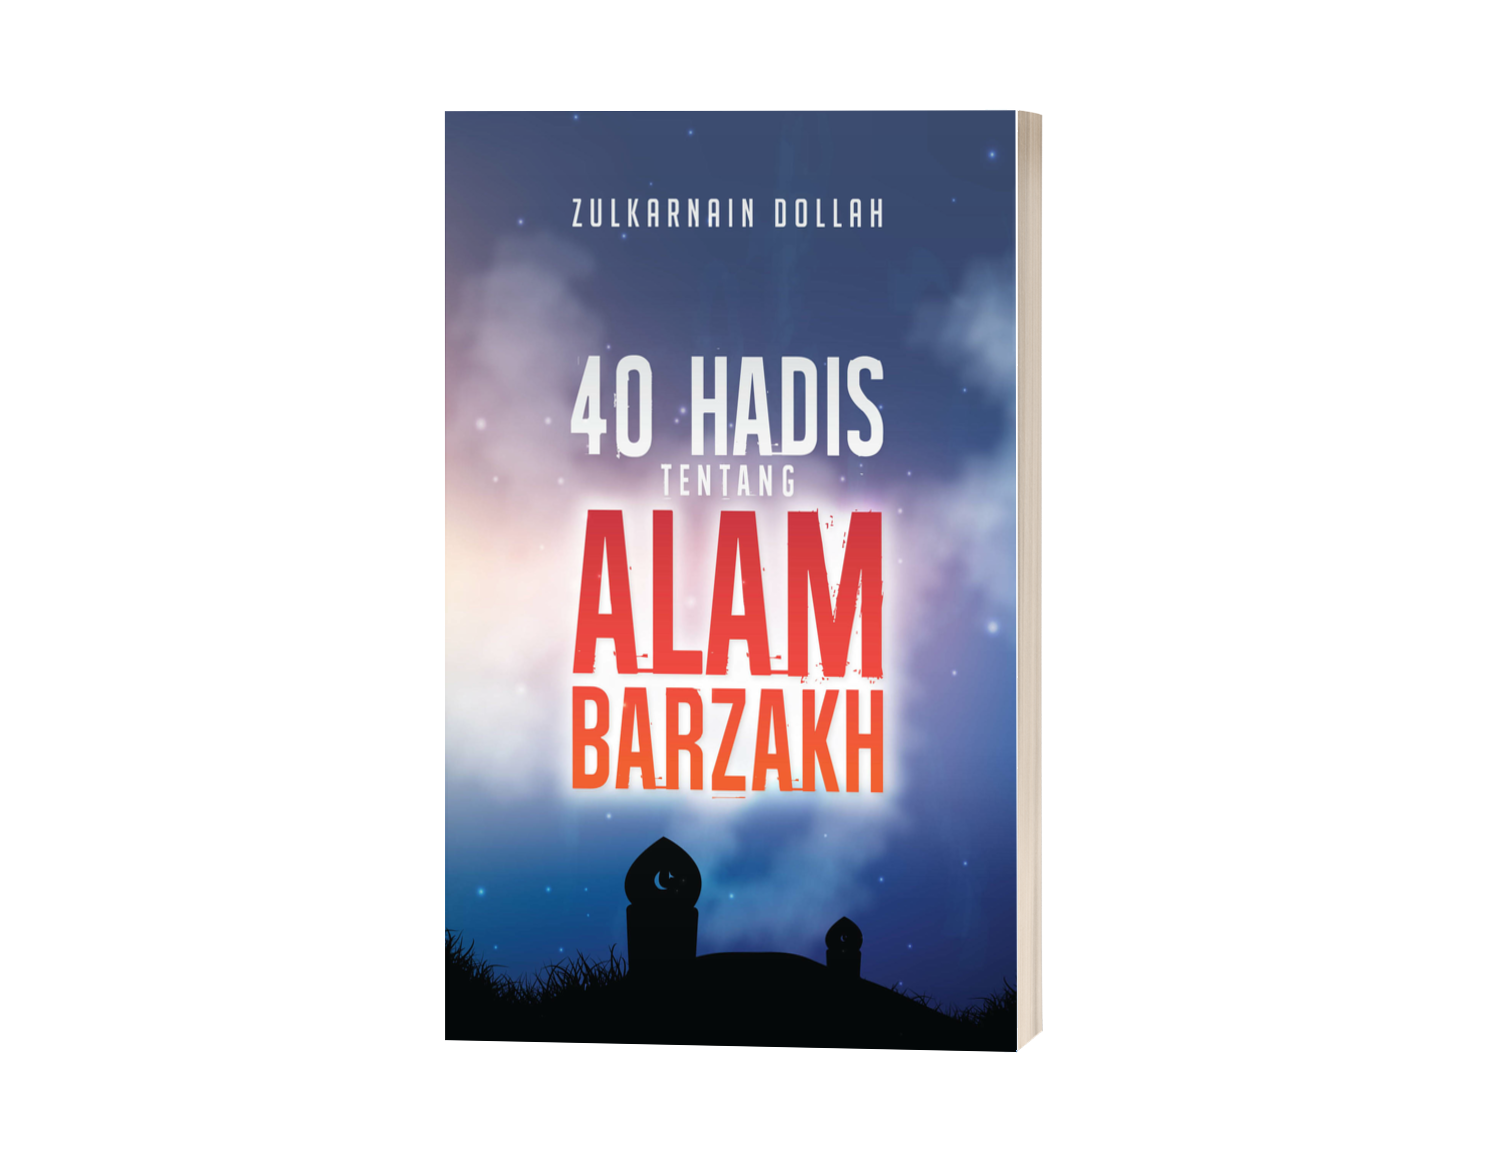 40 HADIS TENTANG ALAM BARZAKH